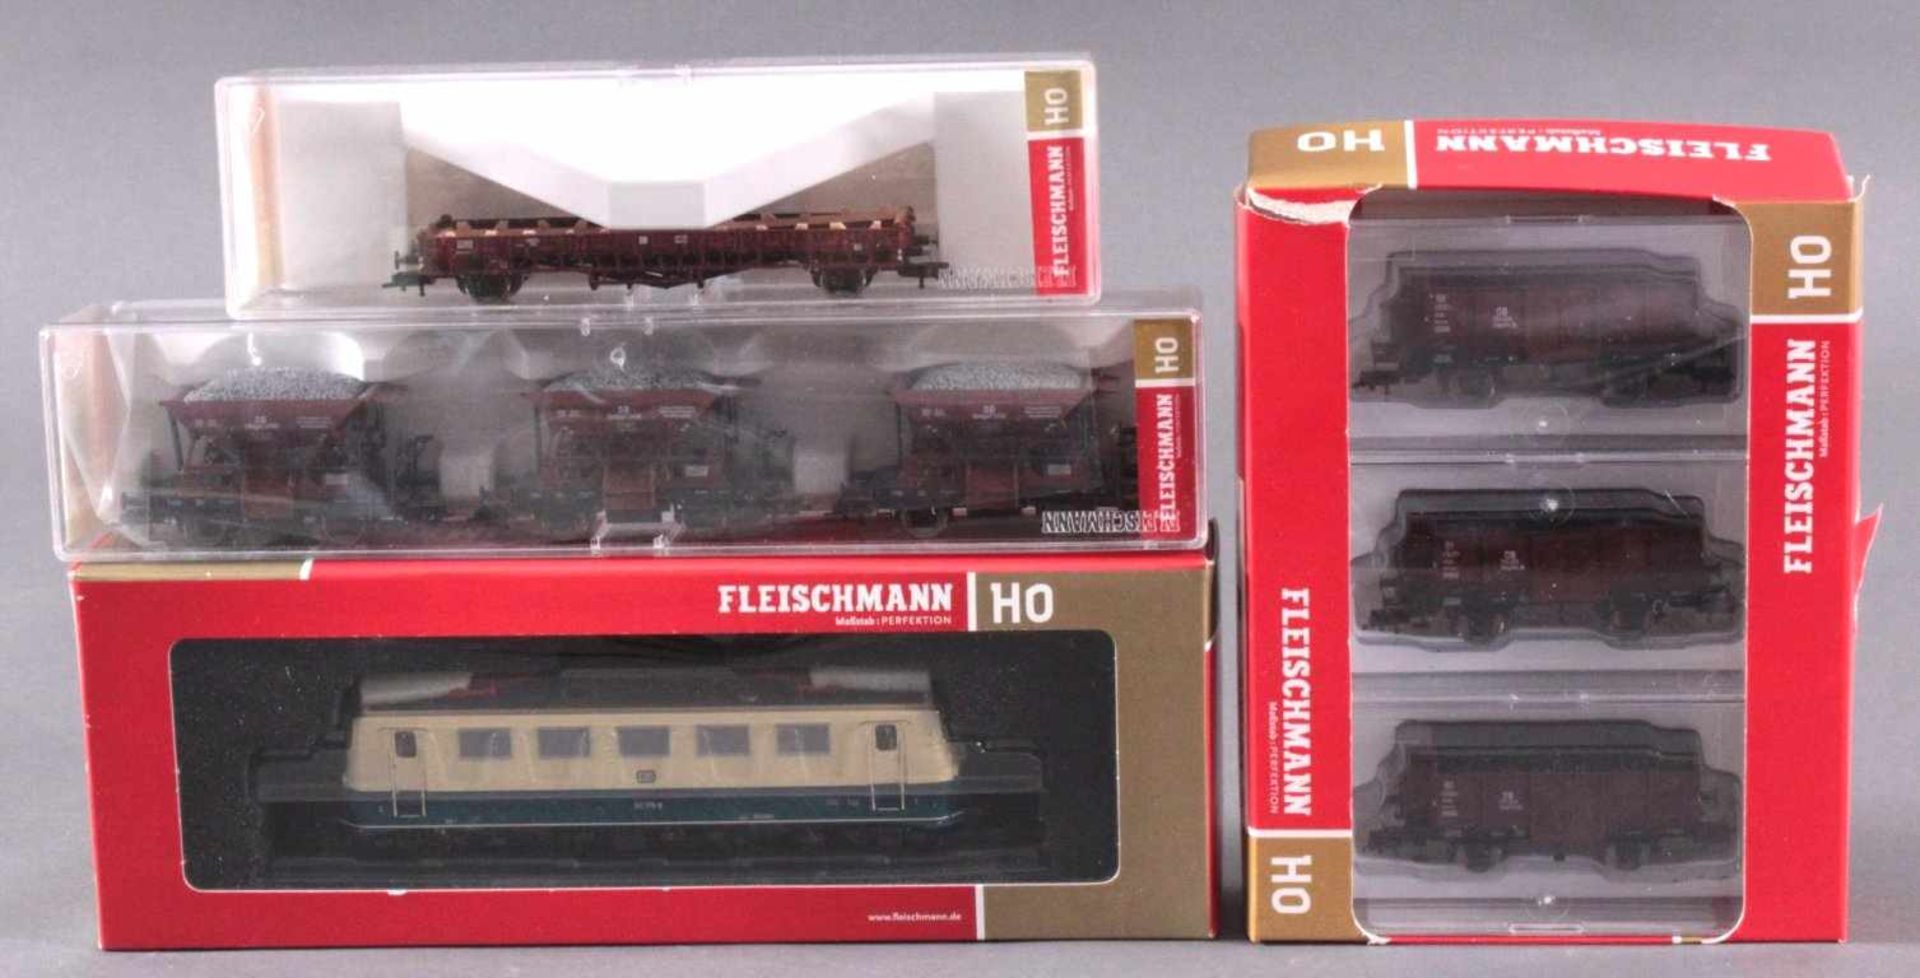 Fleischmann 432801 mit 7 Waggons Spur H0E-Lok in beige 141 176-8, Gütterwaggons 5227 02, 3x 5812